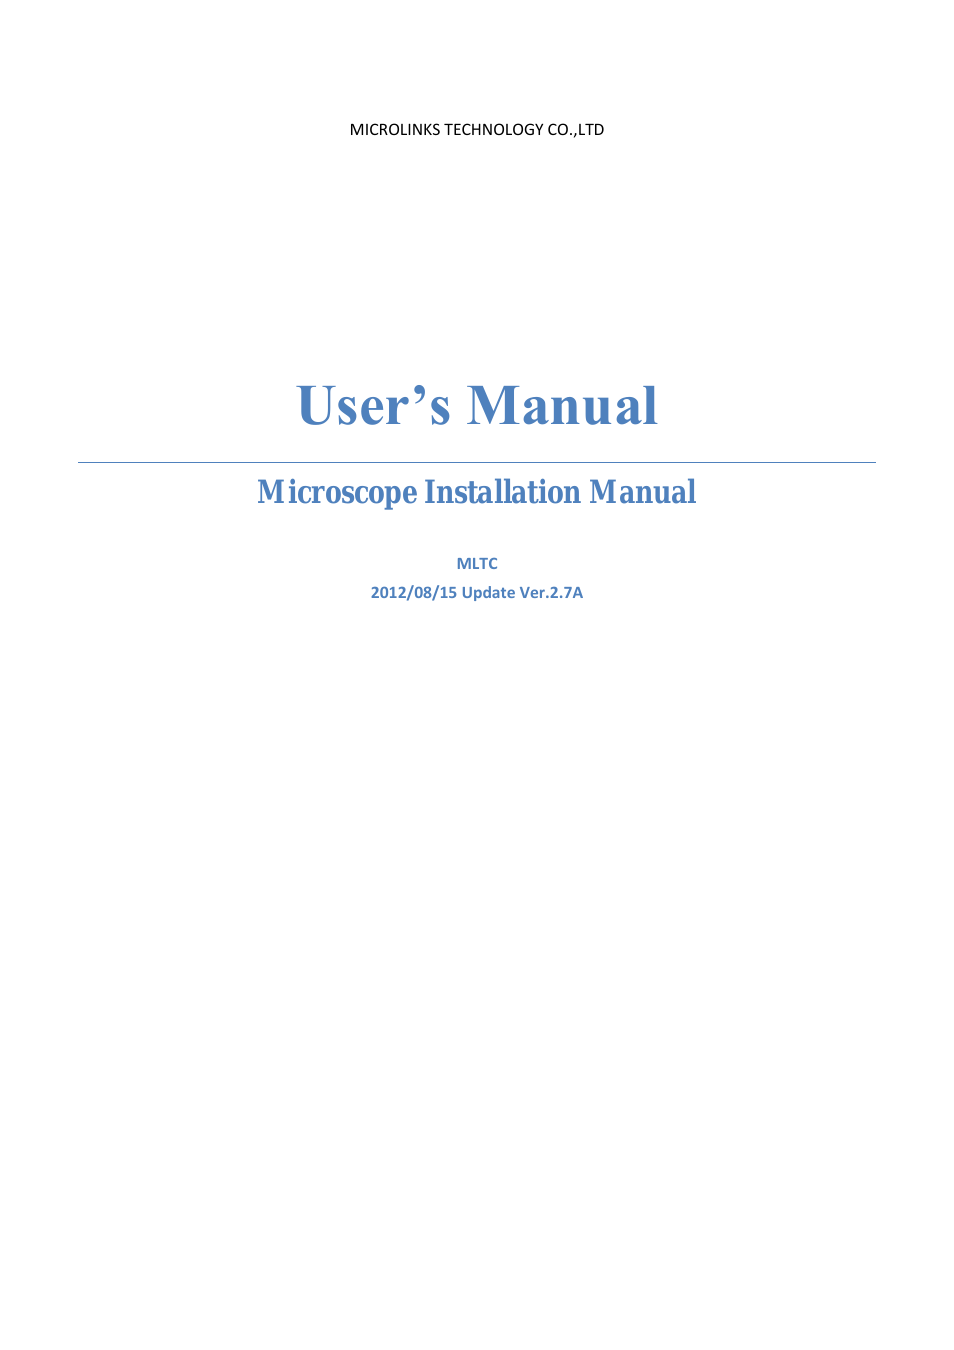 UM05 - install manual